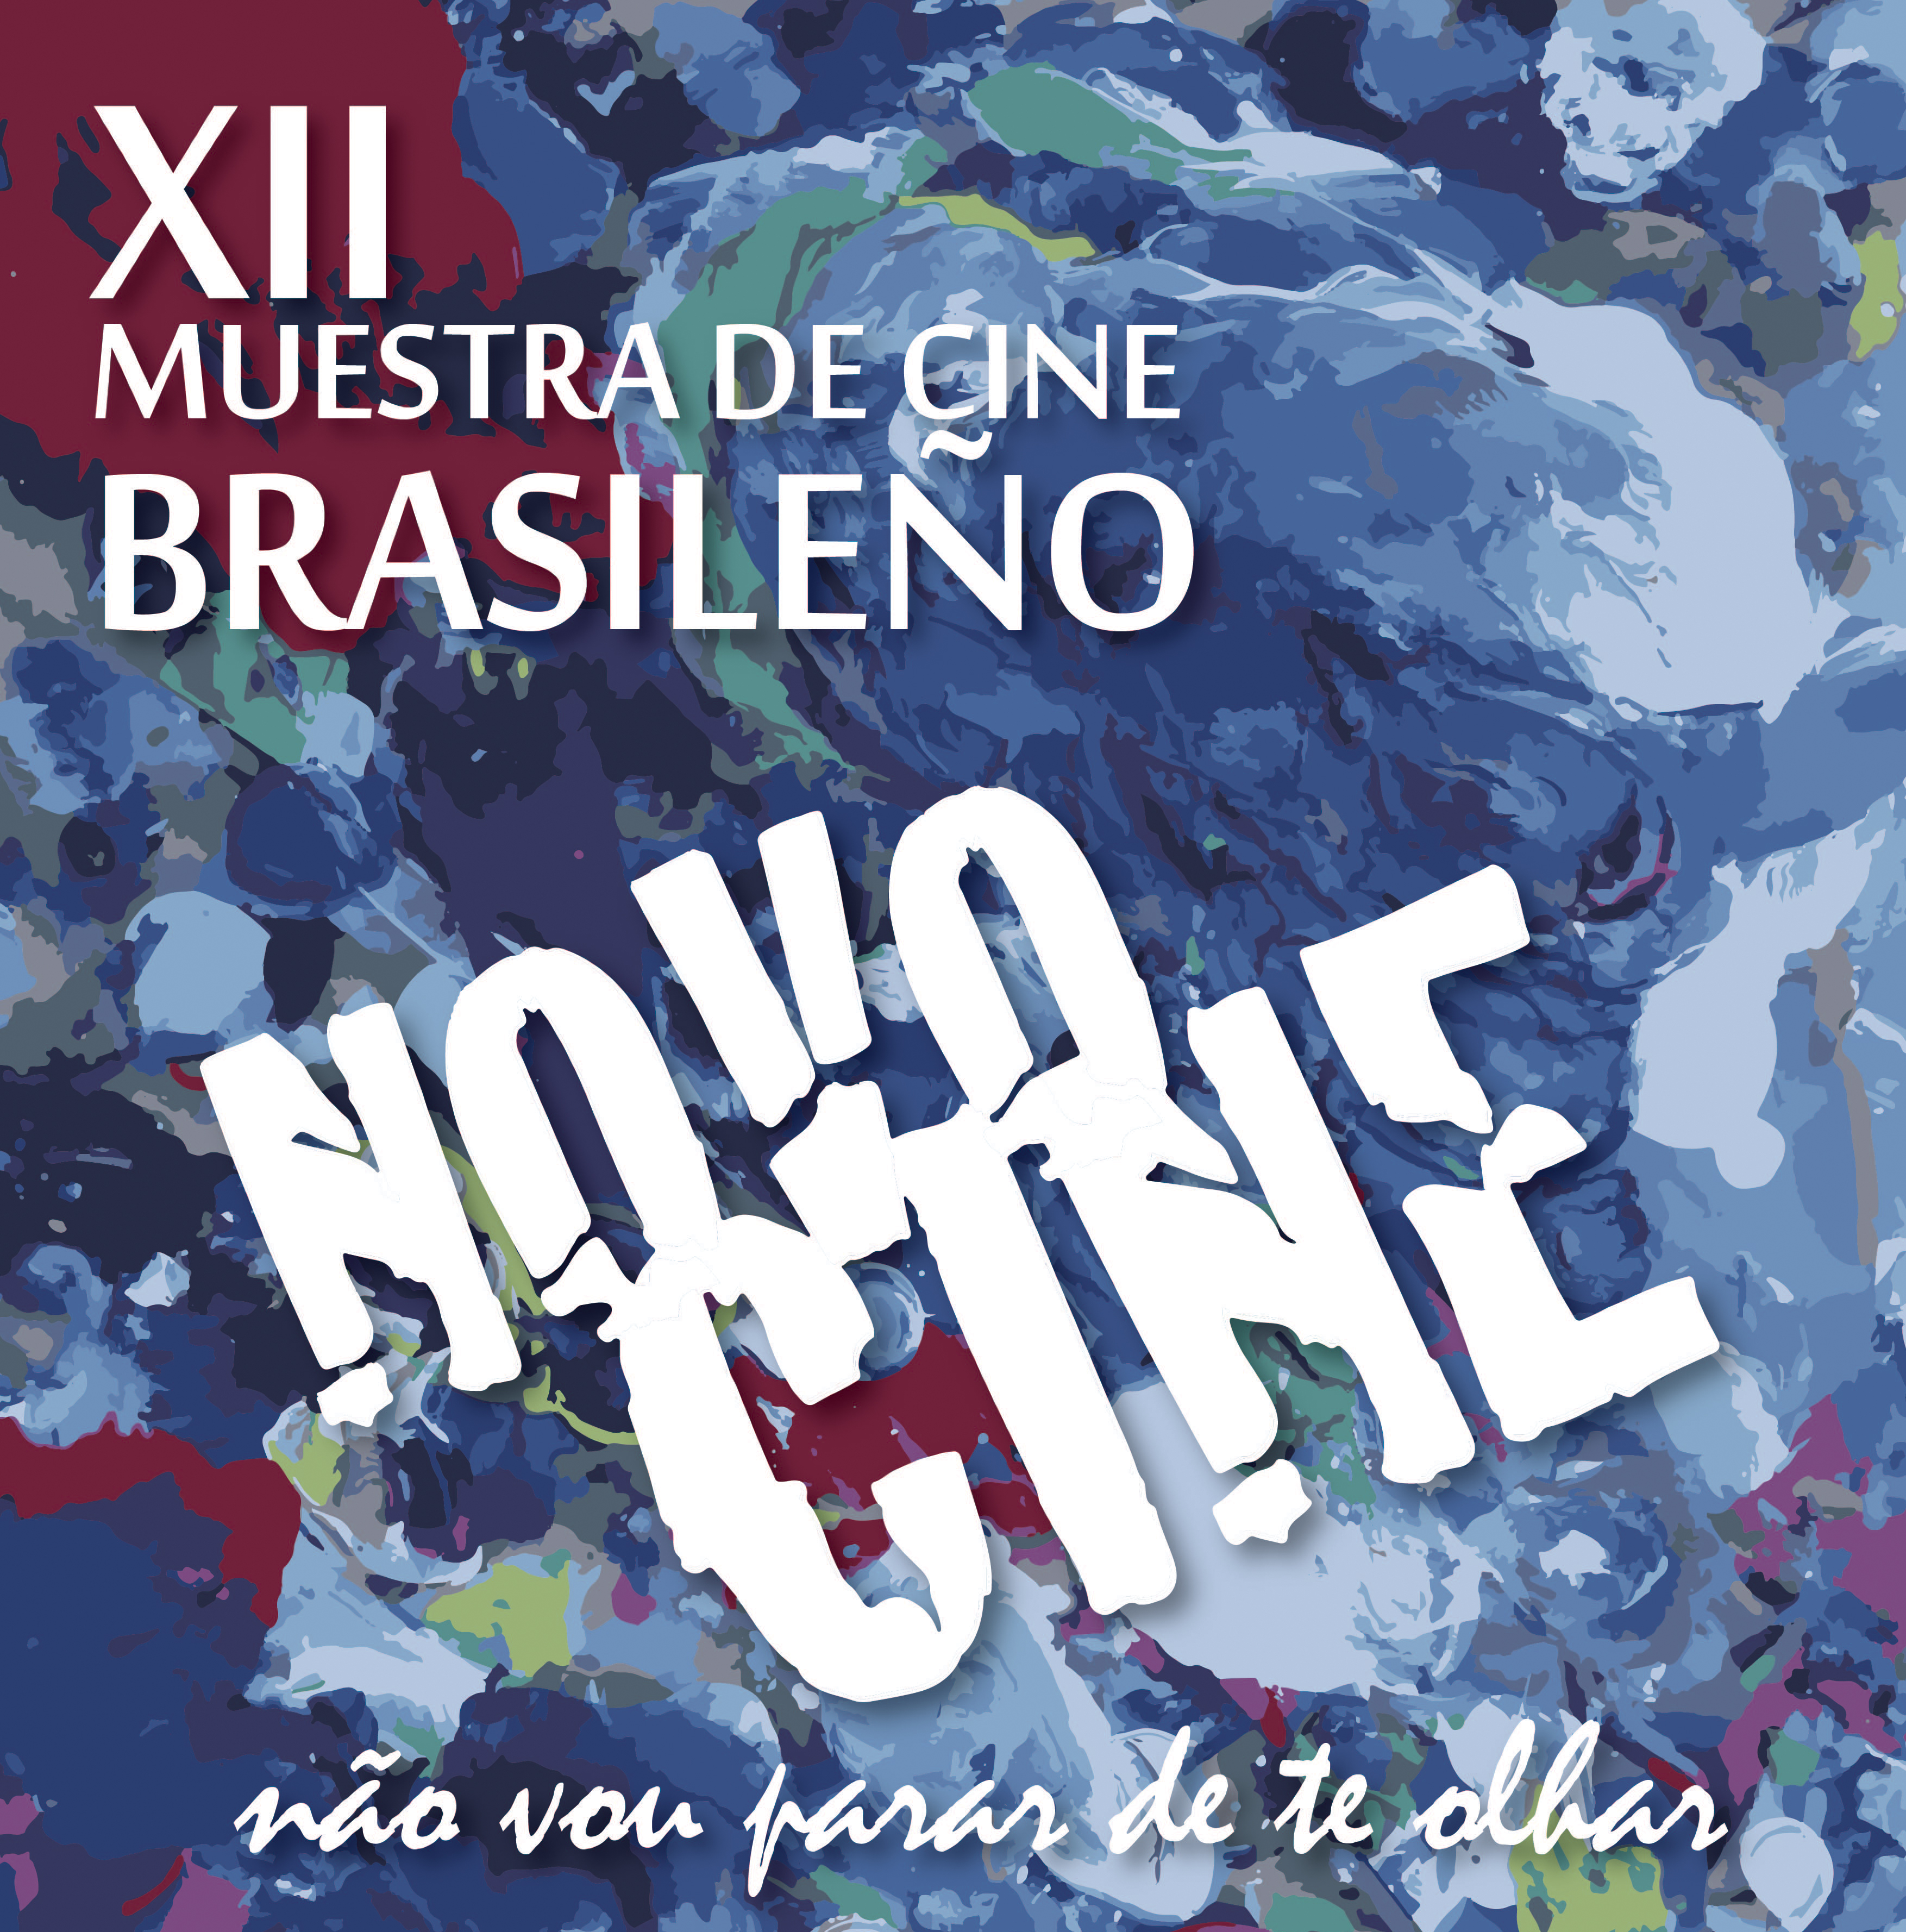 La XII edición de NOVOCINE se estrena en Lugo del 22 de enero al 14 de febrero